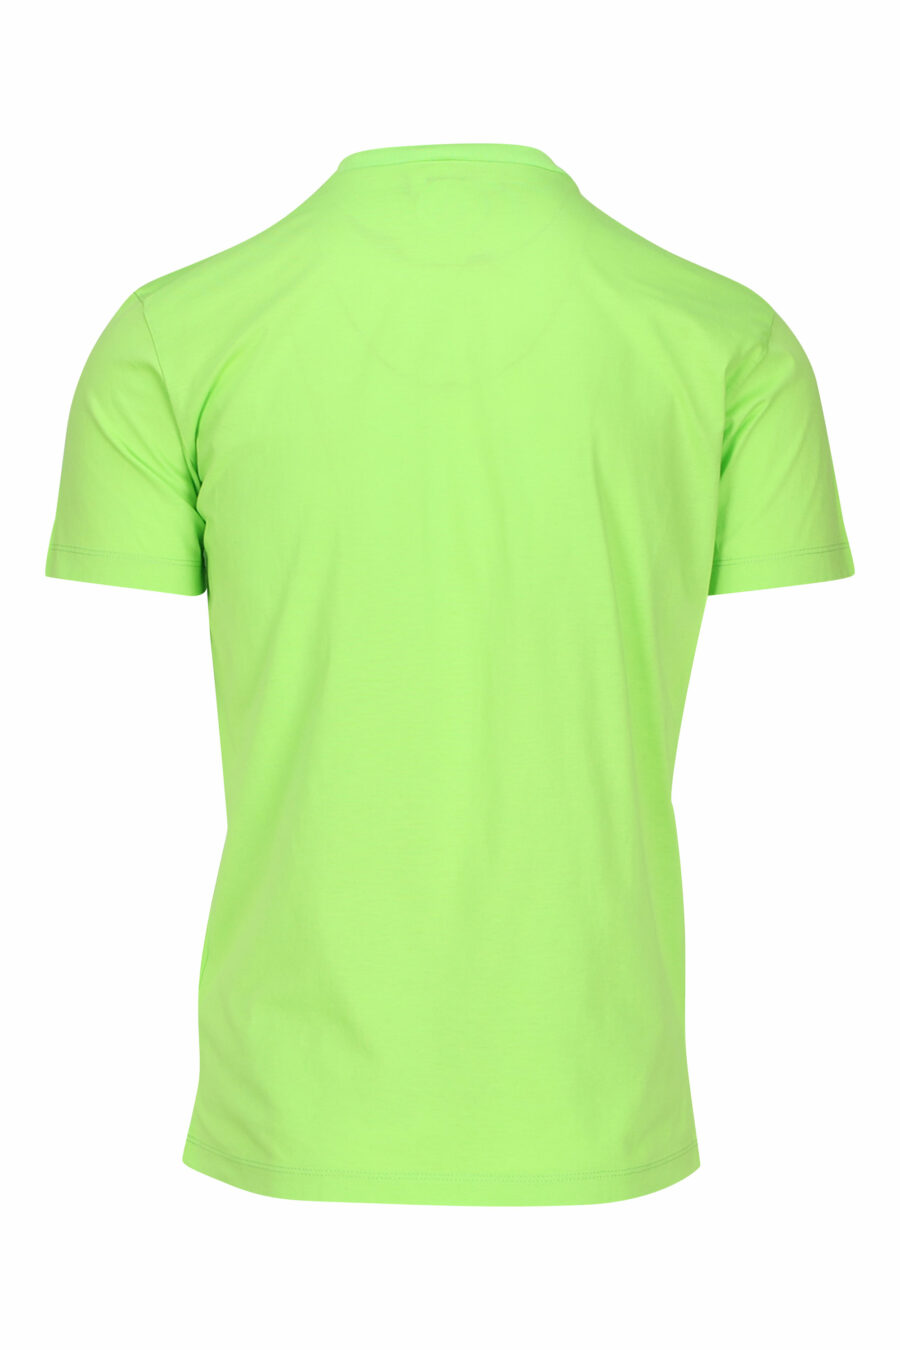 T-shirt vert citron avec maxilogo "icon" noir - 8054148035594 1